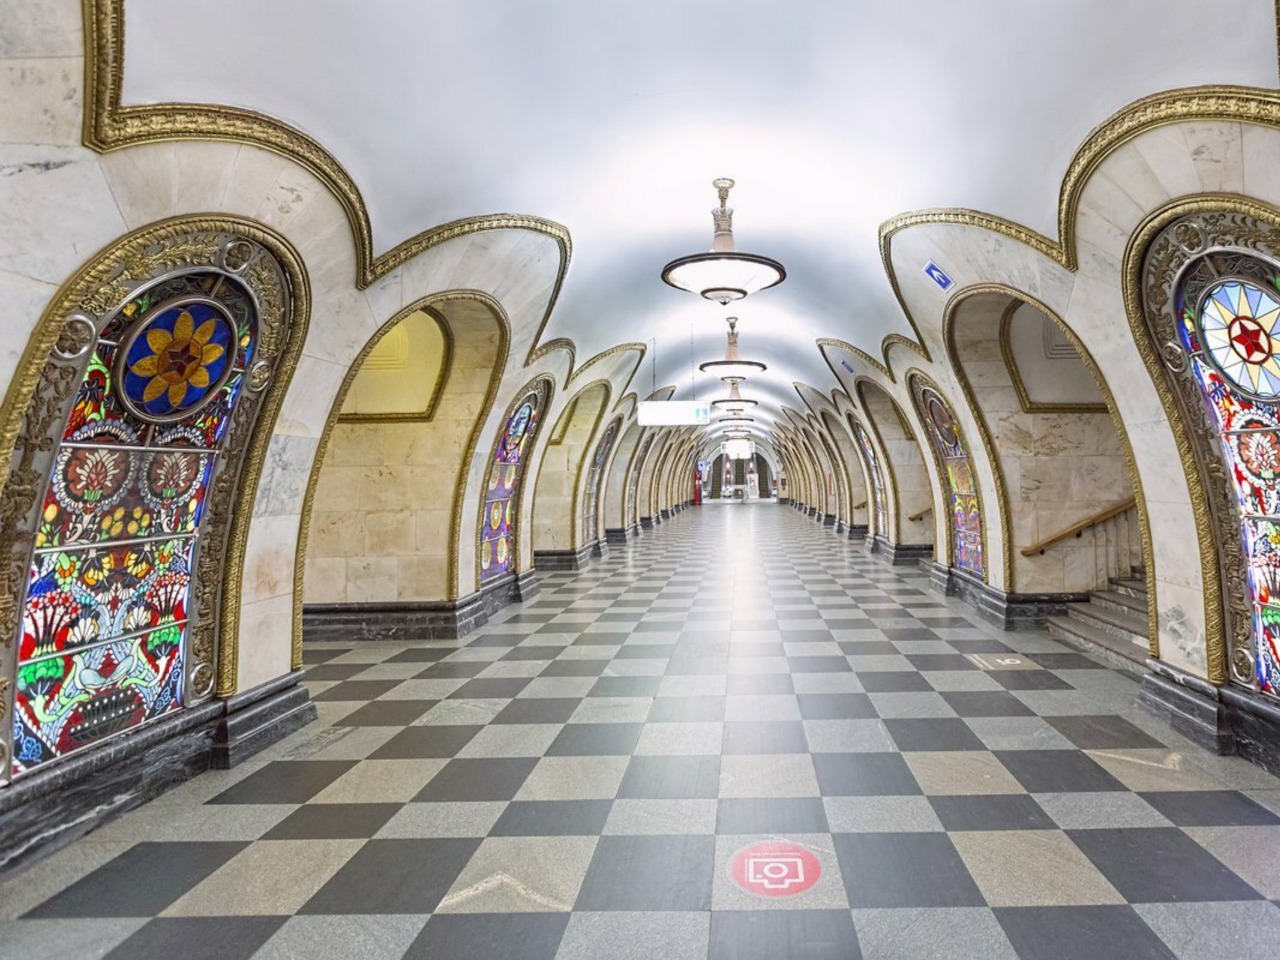 Московский метрополитен: подземные дворцы | Цена 7400₽, отзывы, описание экскурсии